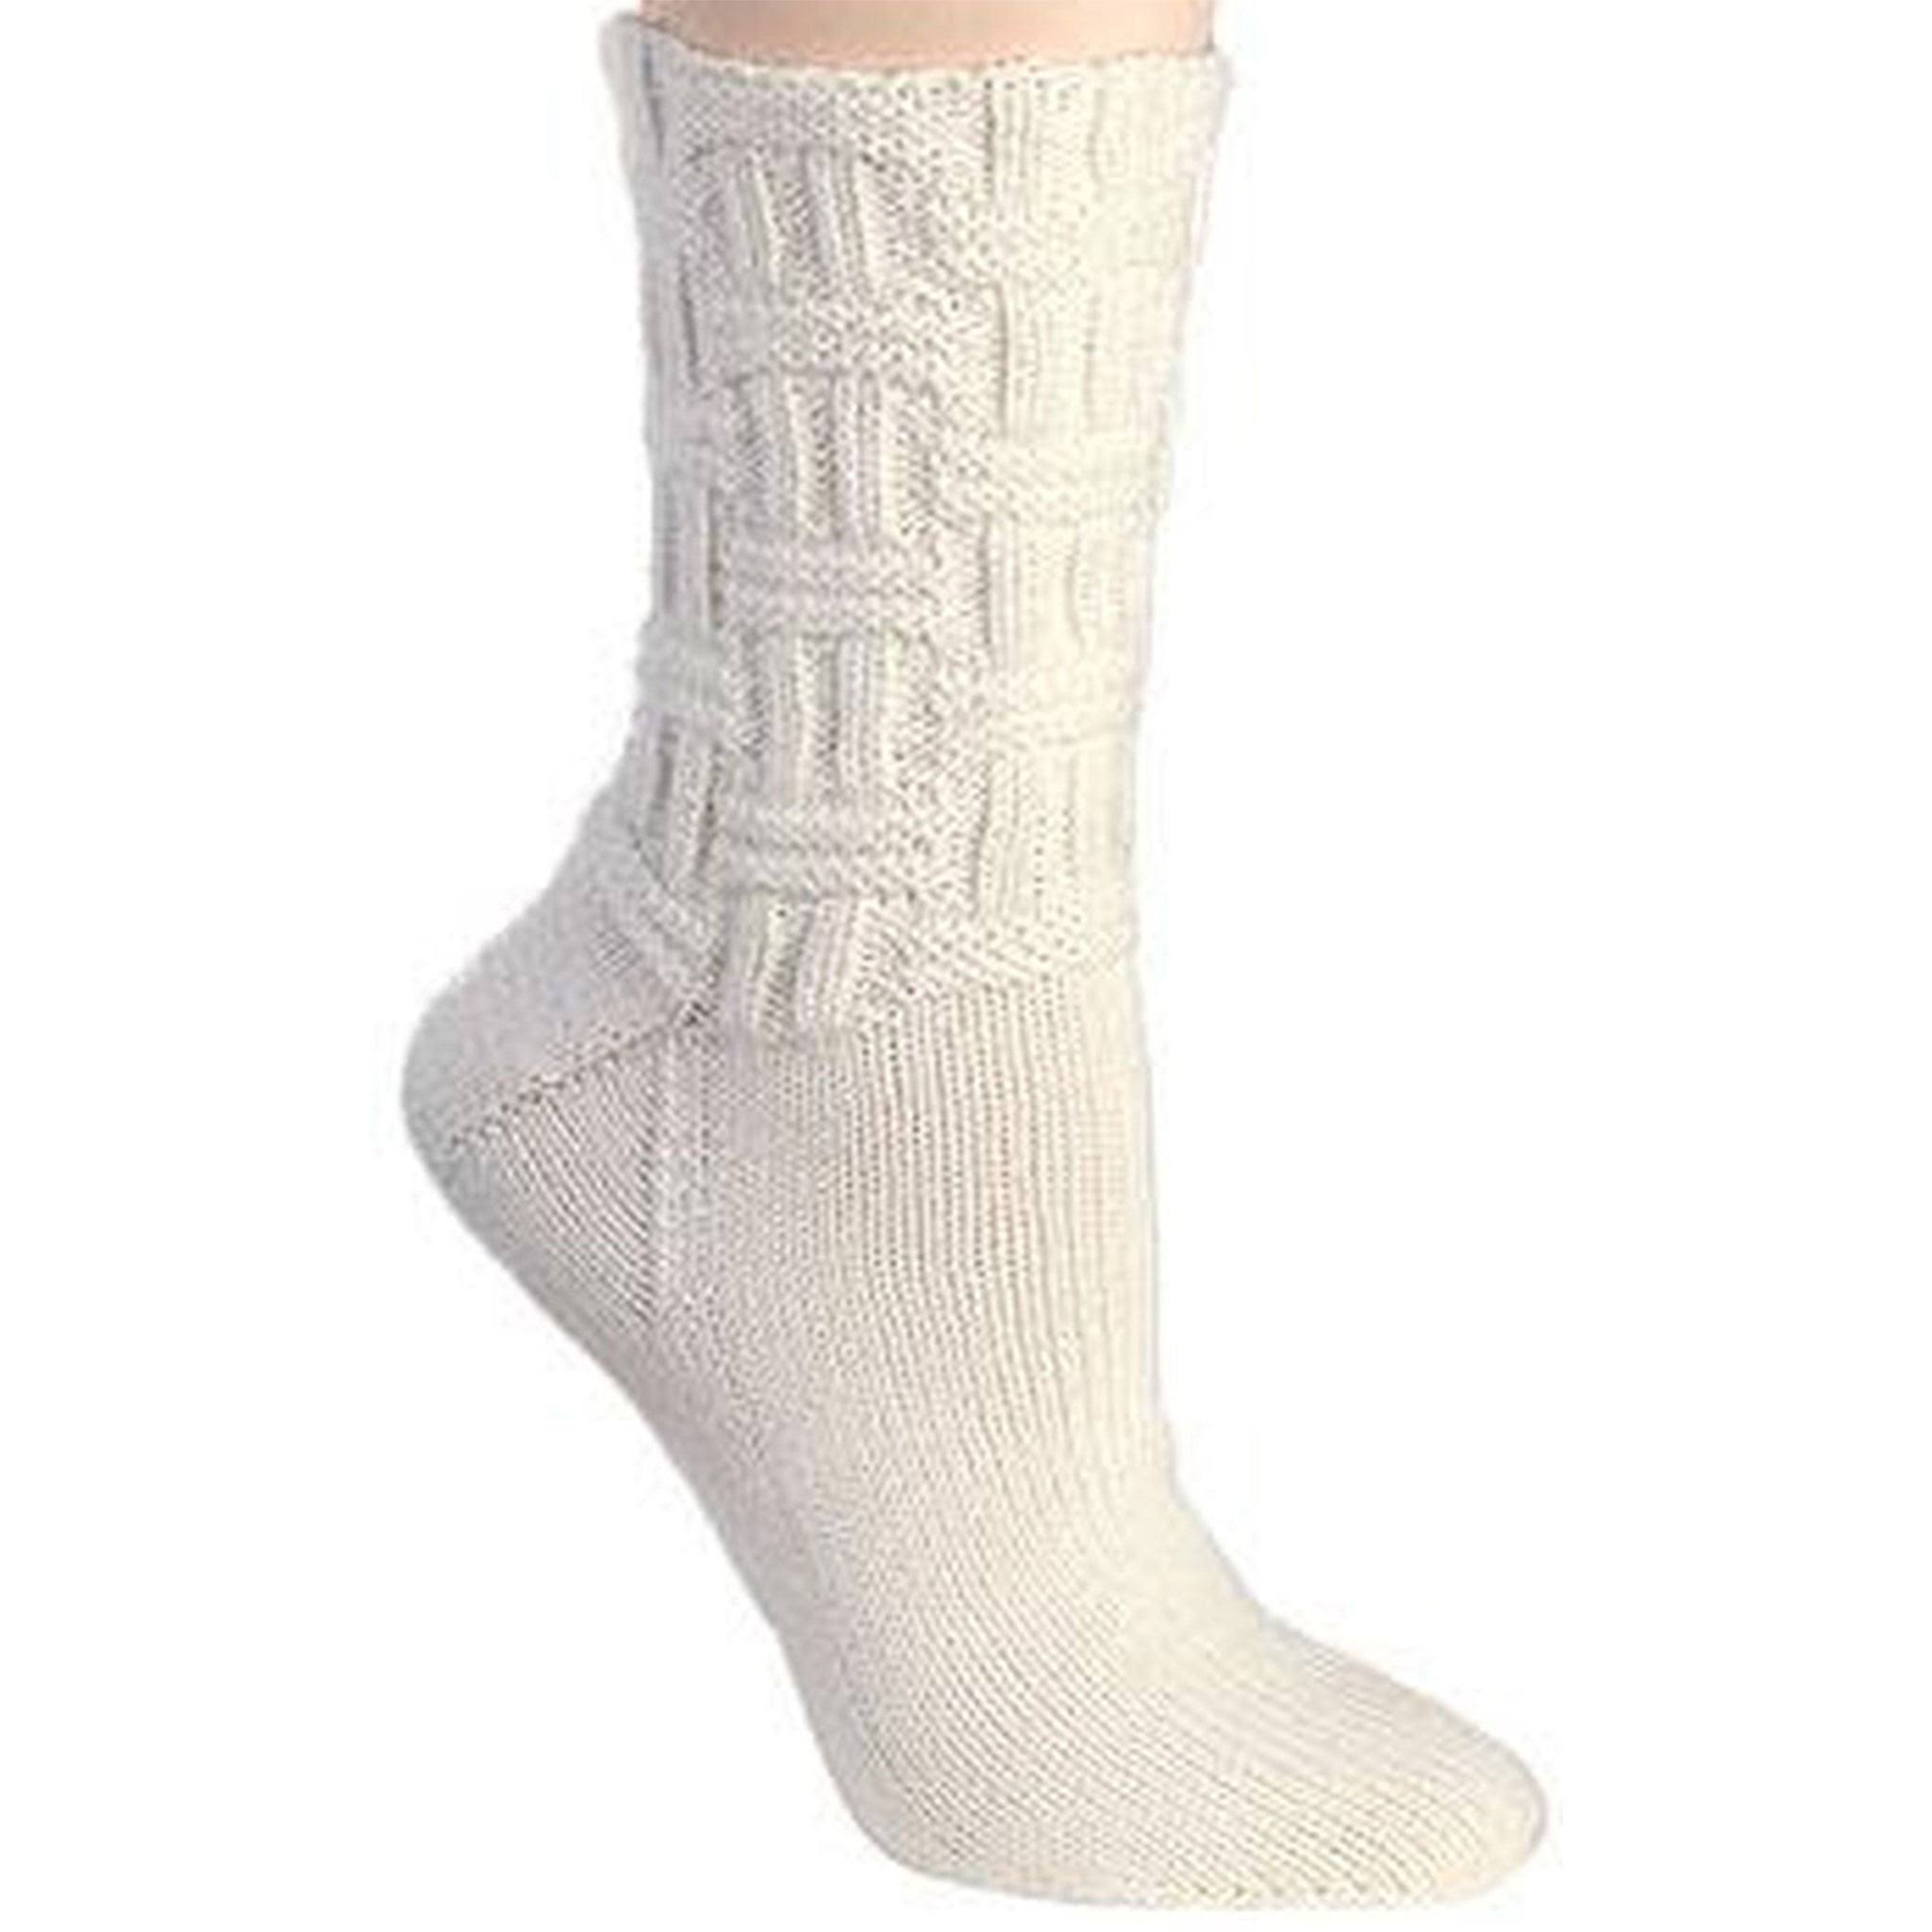 Berroco Comfort Sock - Pearl (1702)